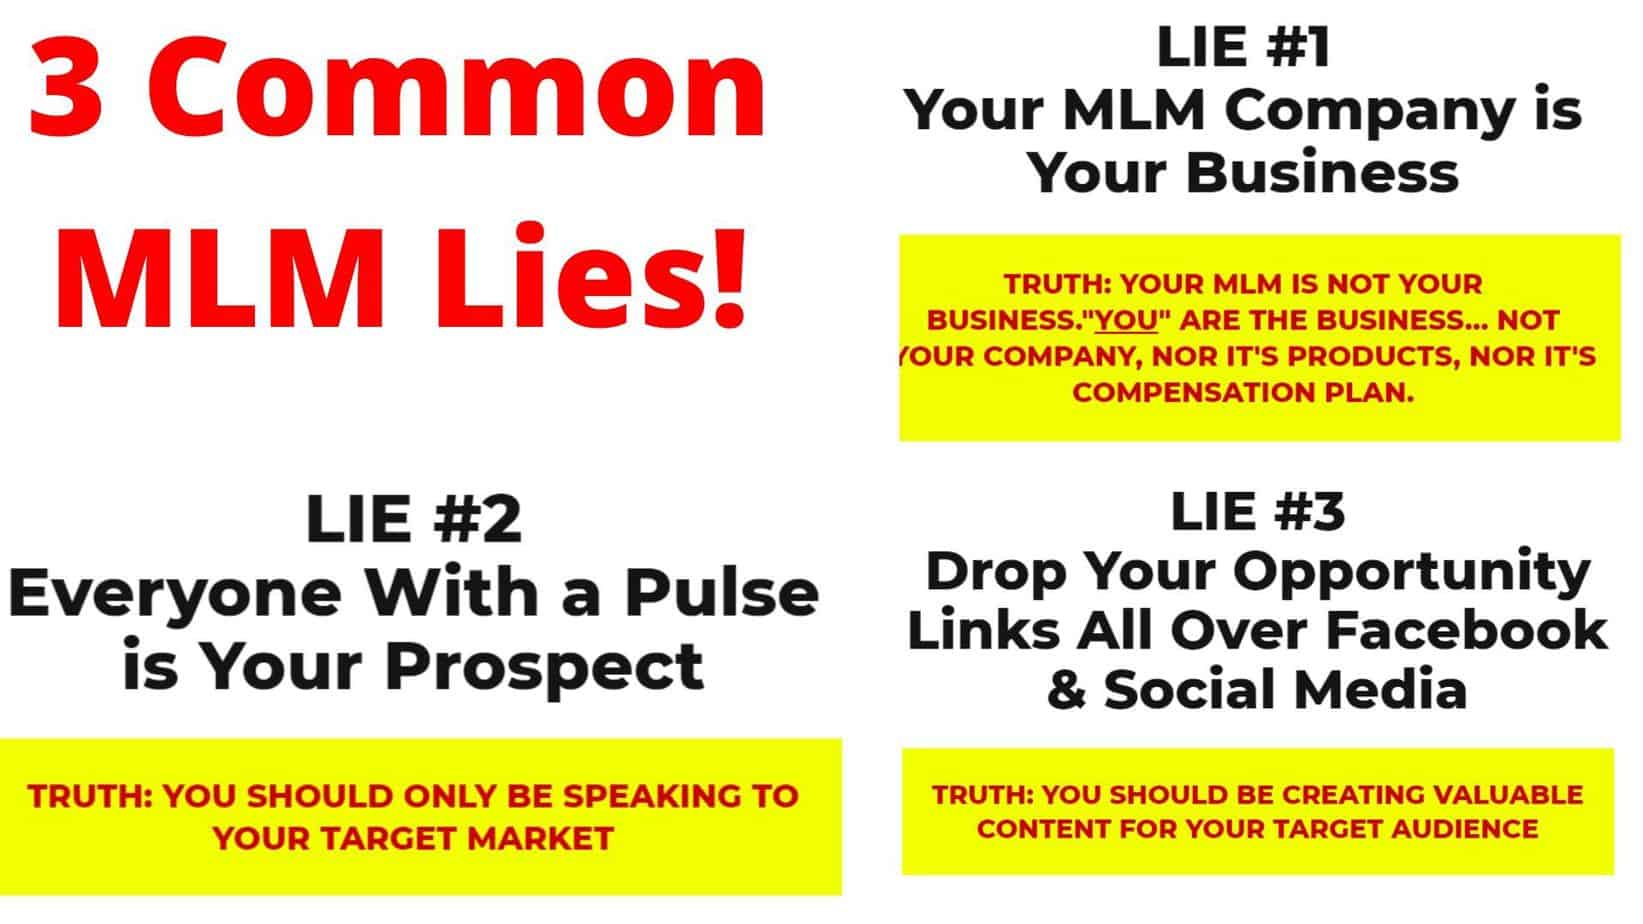 3 Common MLM Lies